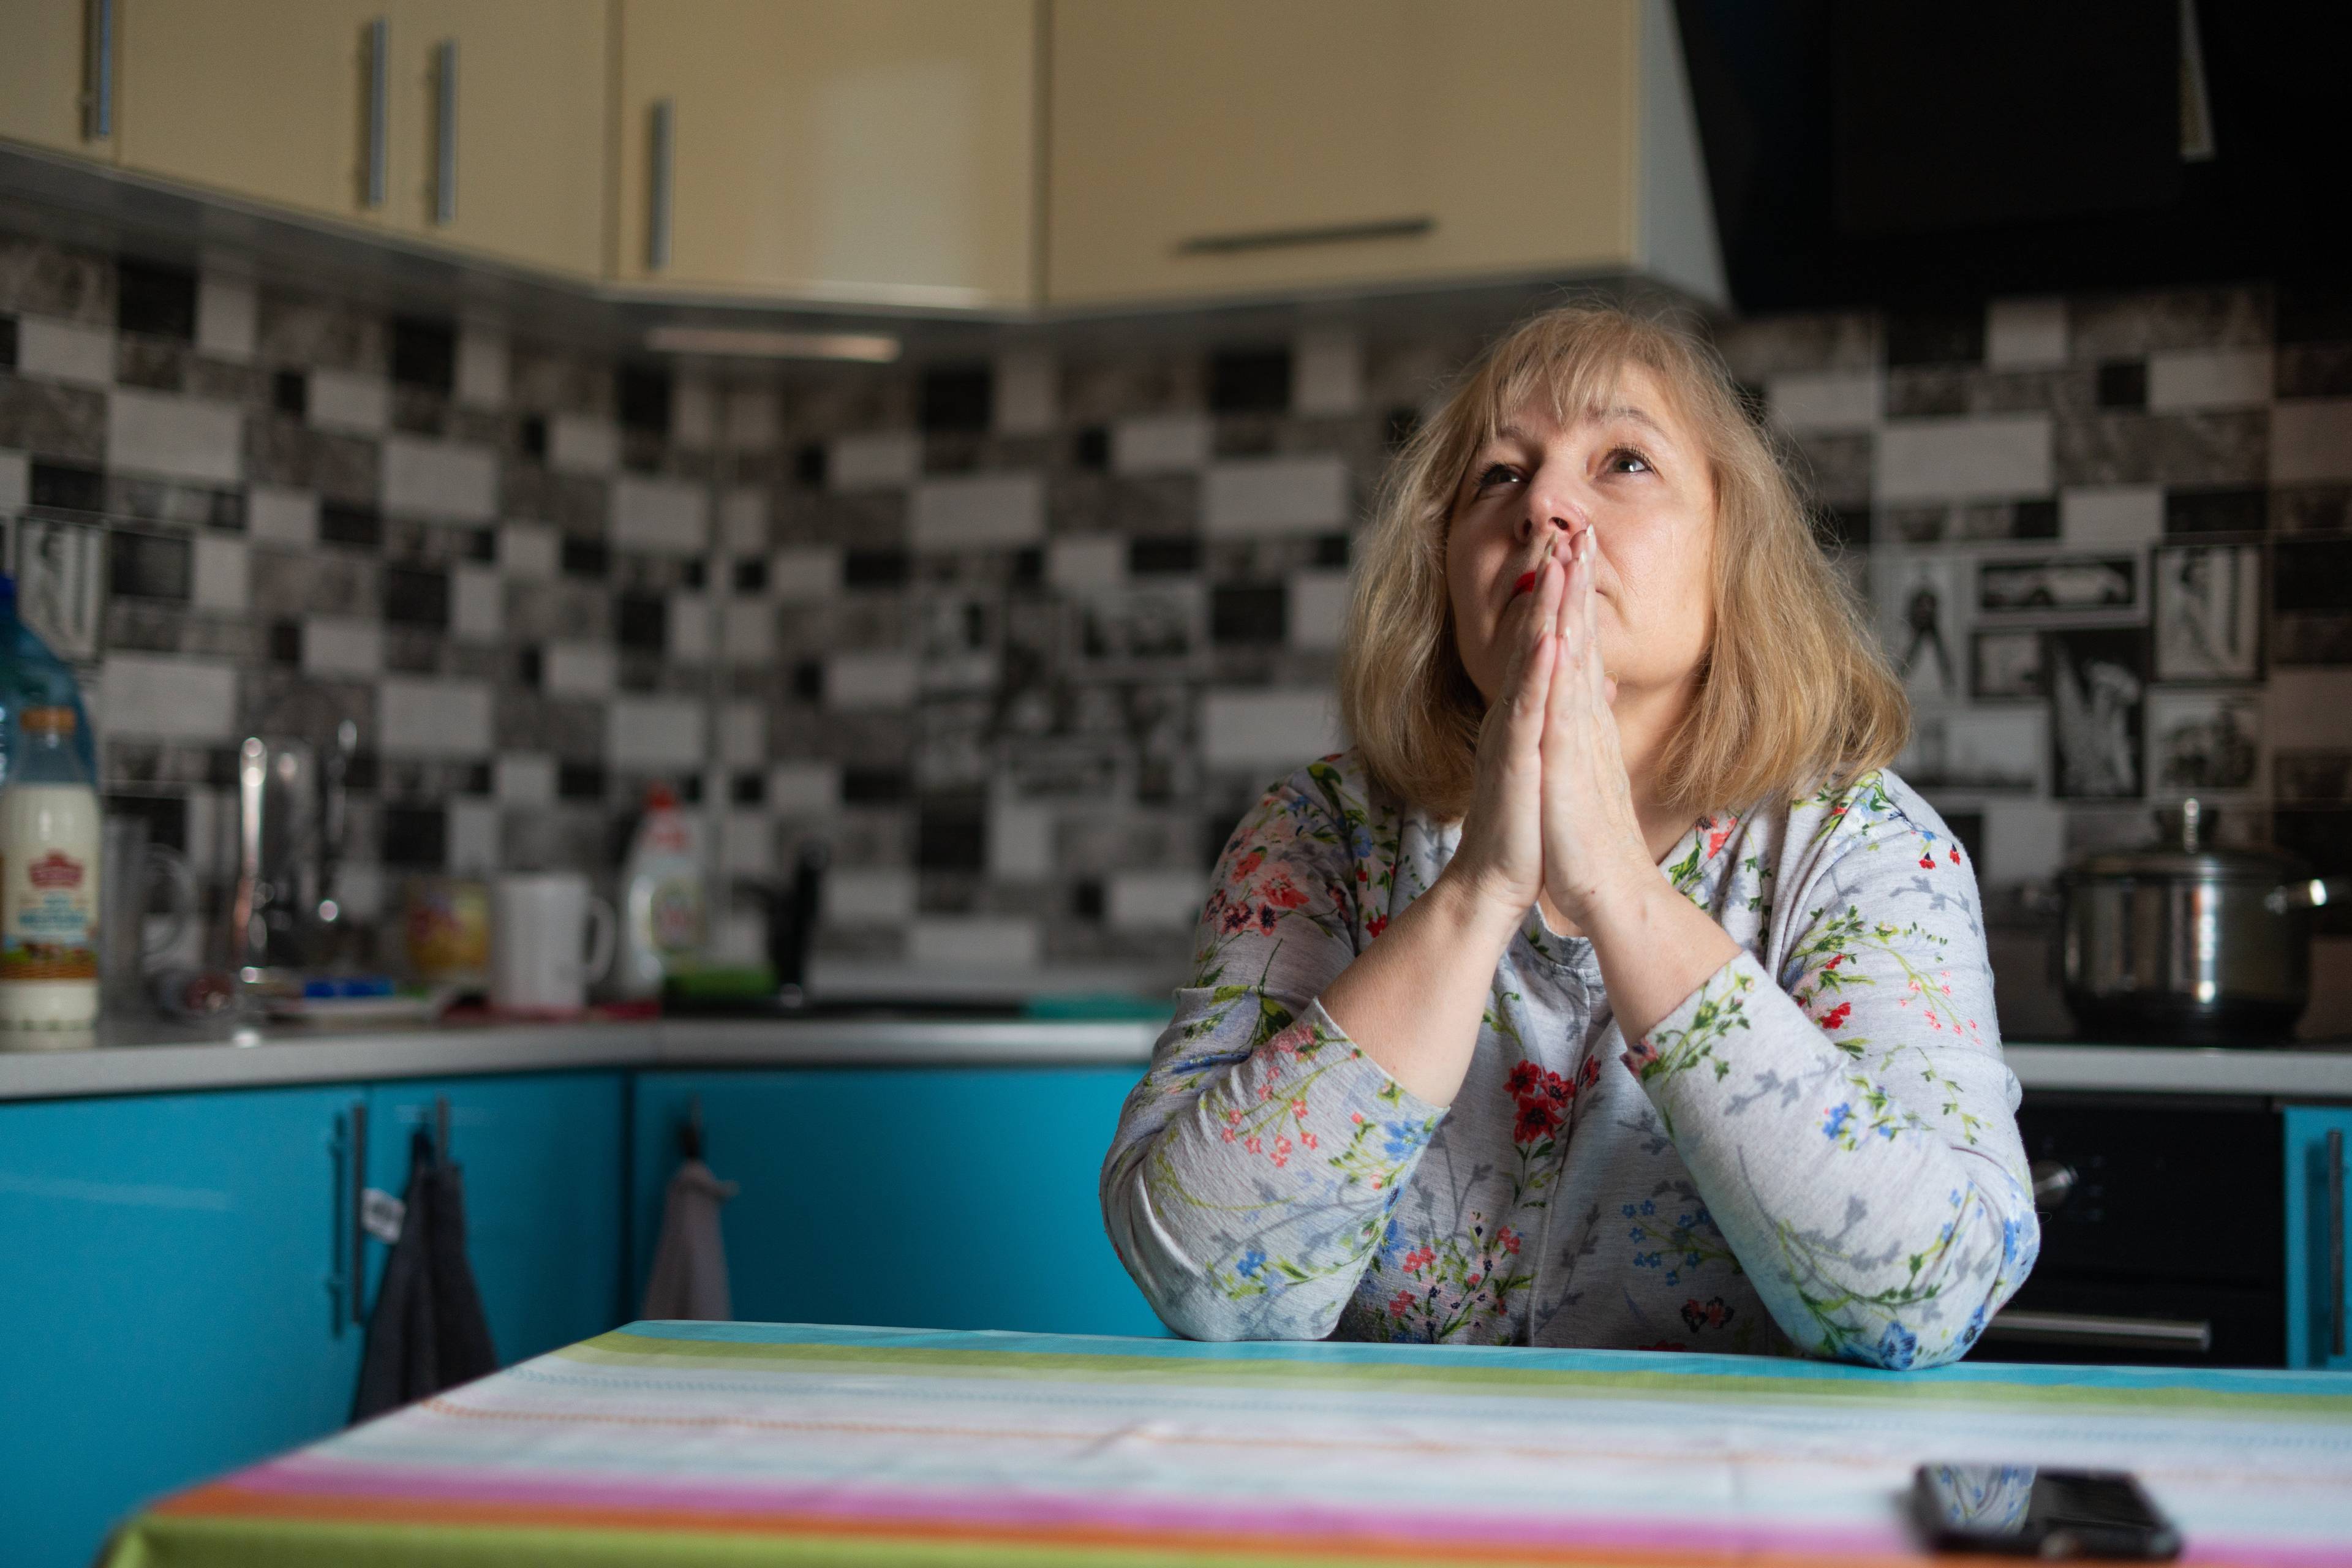 kobieta w średnim wieku z blond włosami do ramion siedzi w kuchni składając ręce jak do modlitwy